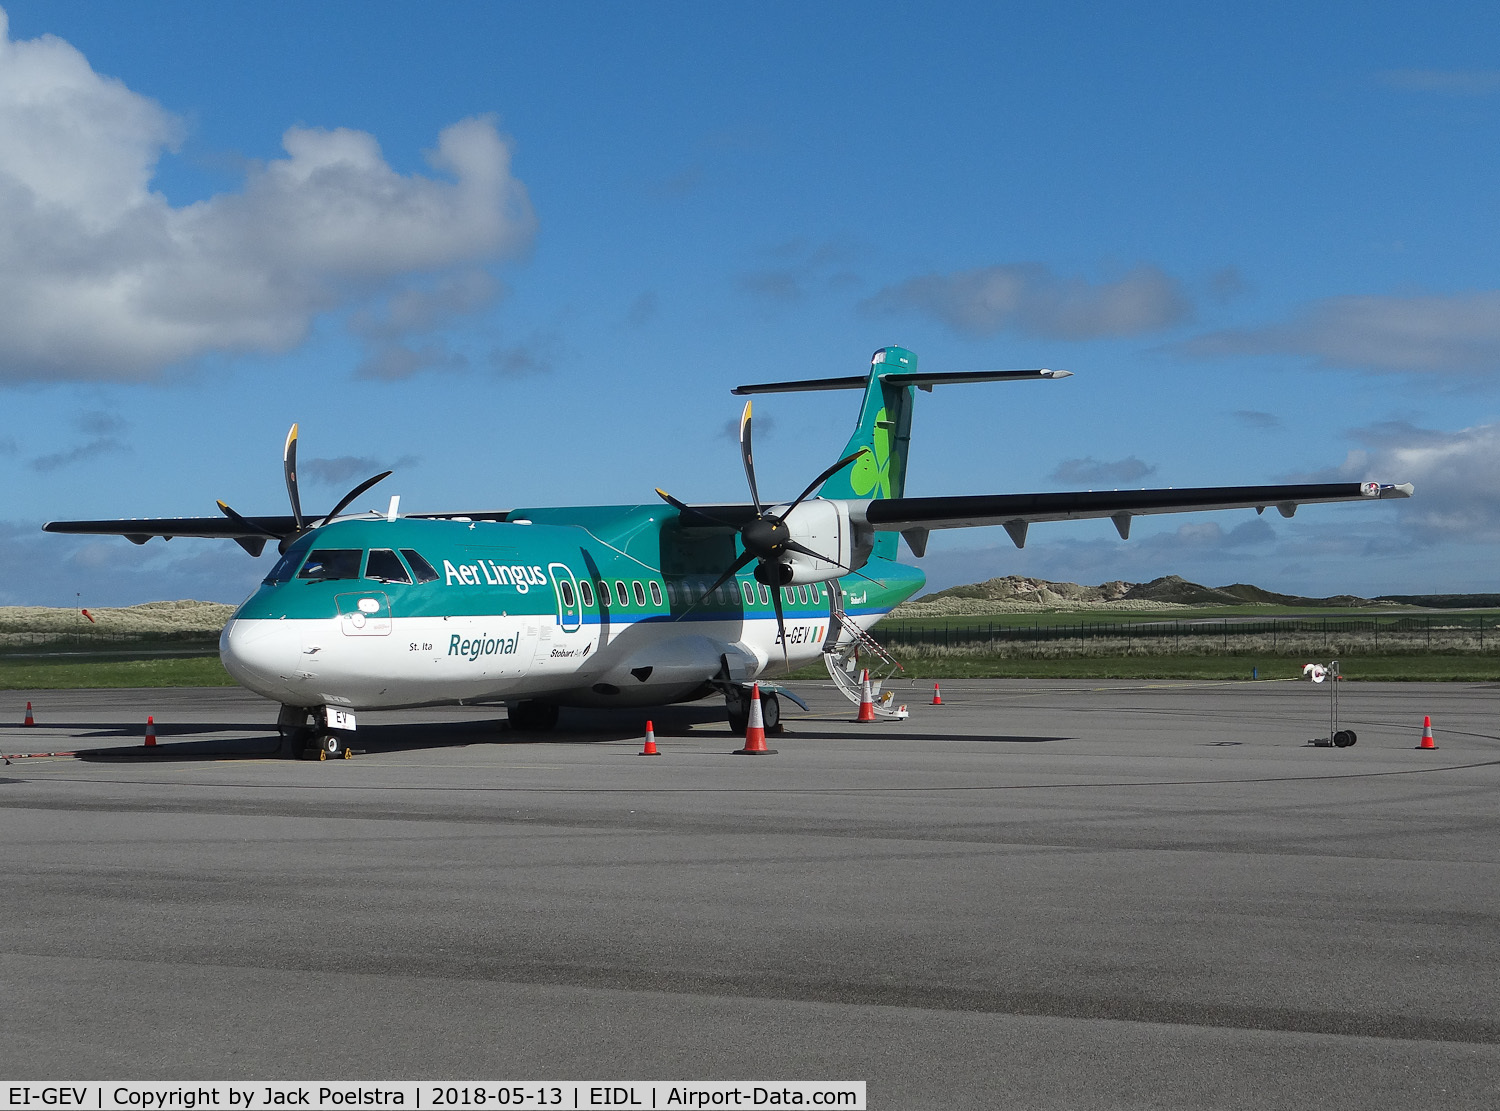 EI-GEV, 2016 ATR 42-600 C/N 1213, EI-GEV of Stobart Air -Aer Lingus Regional at Donegal Airport